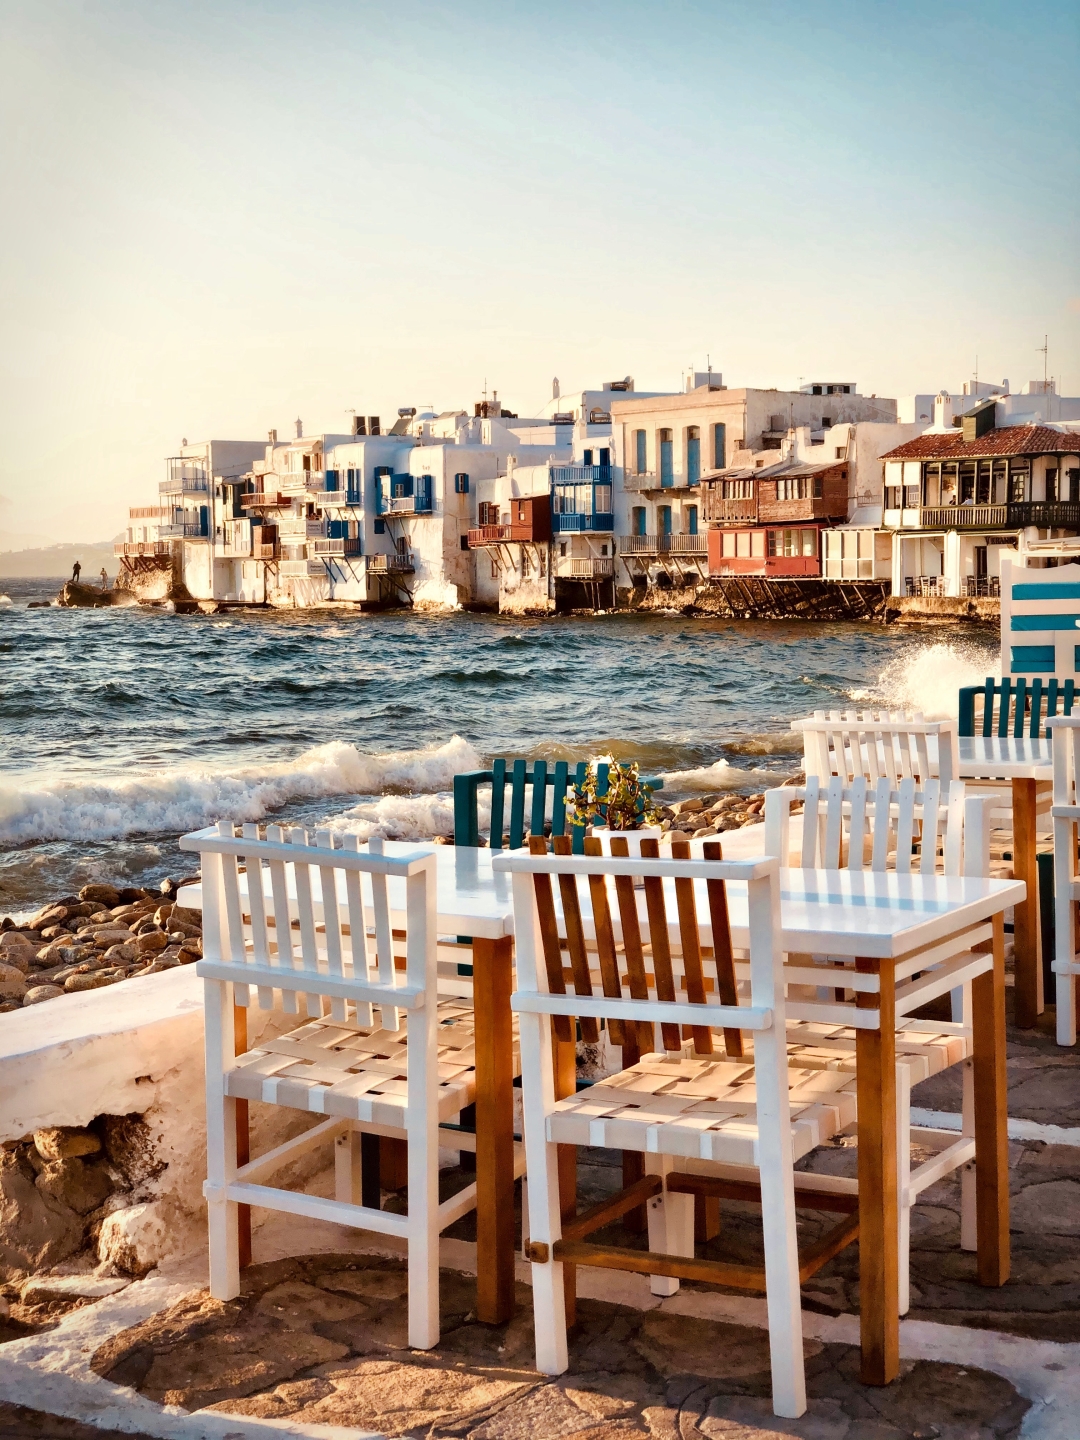 Na koje grčke otoke otputovati ovog ljeta?